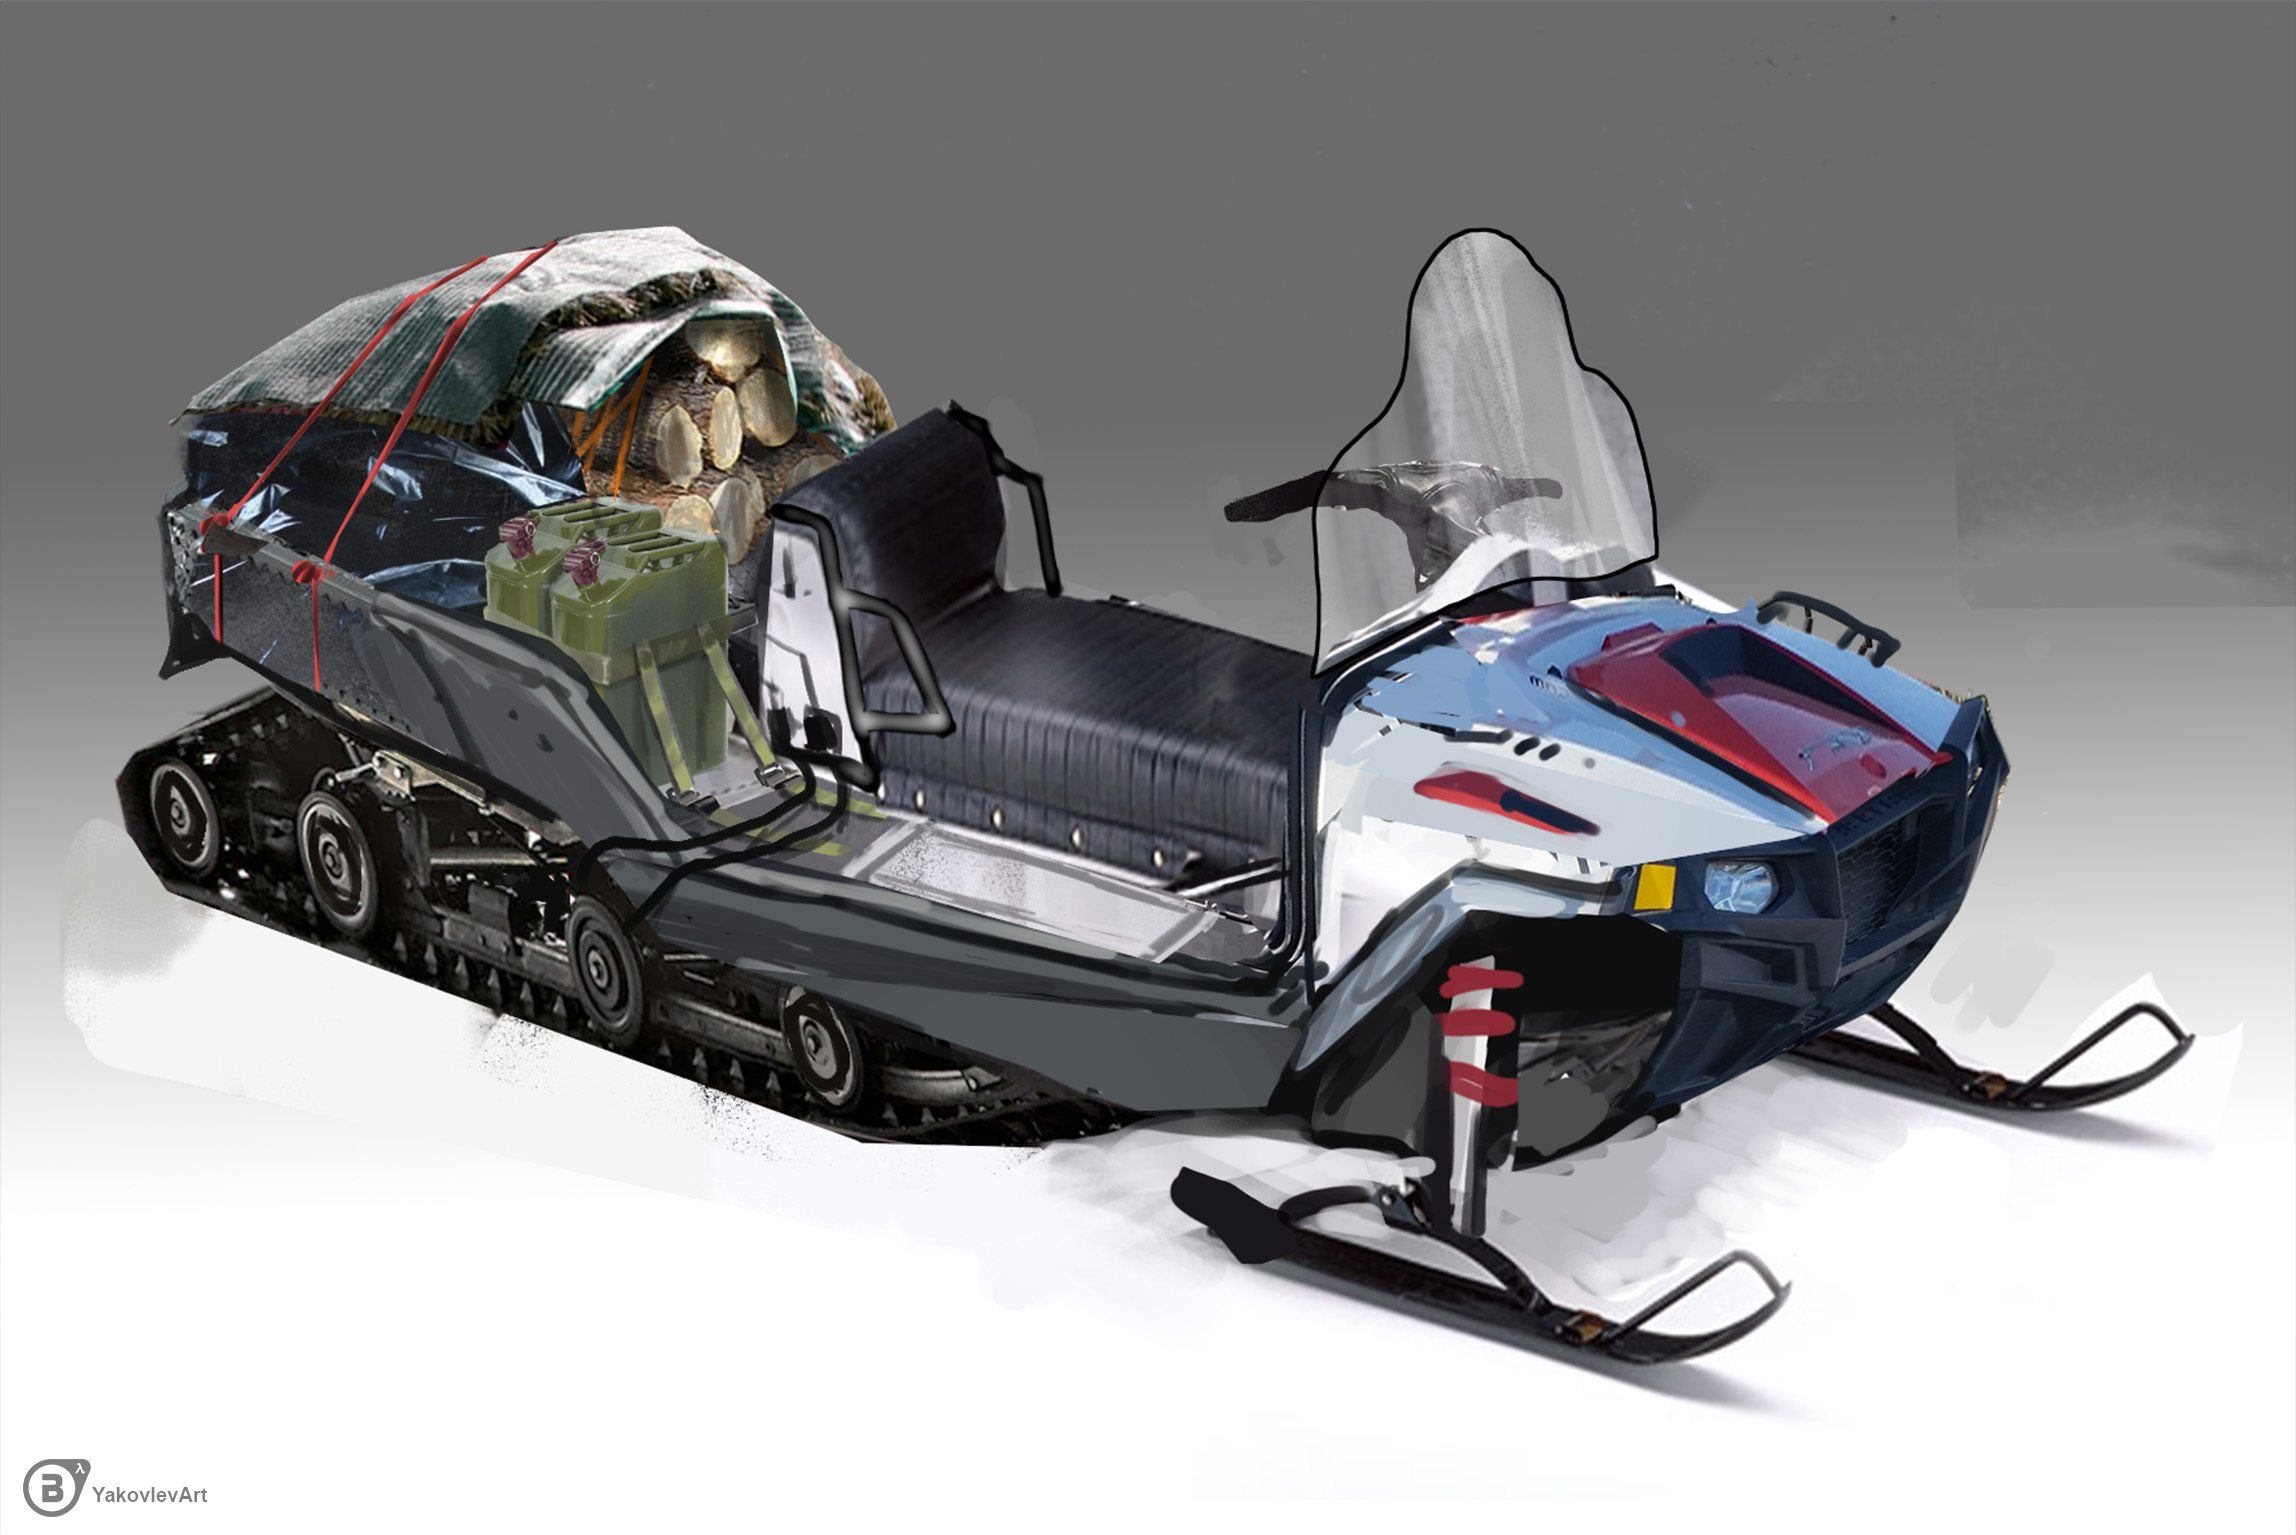 Snowmobile 5